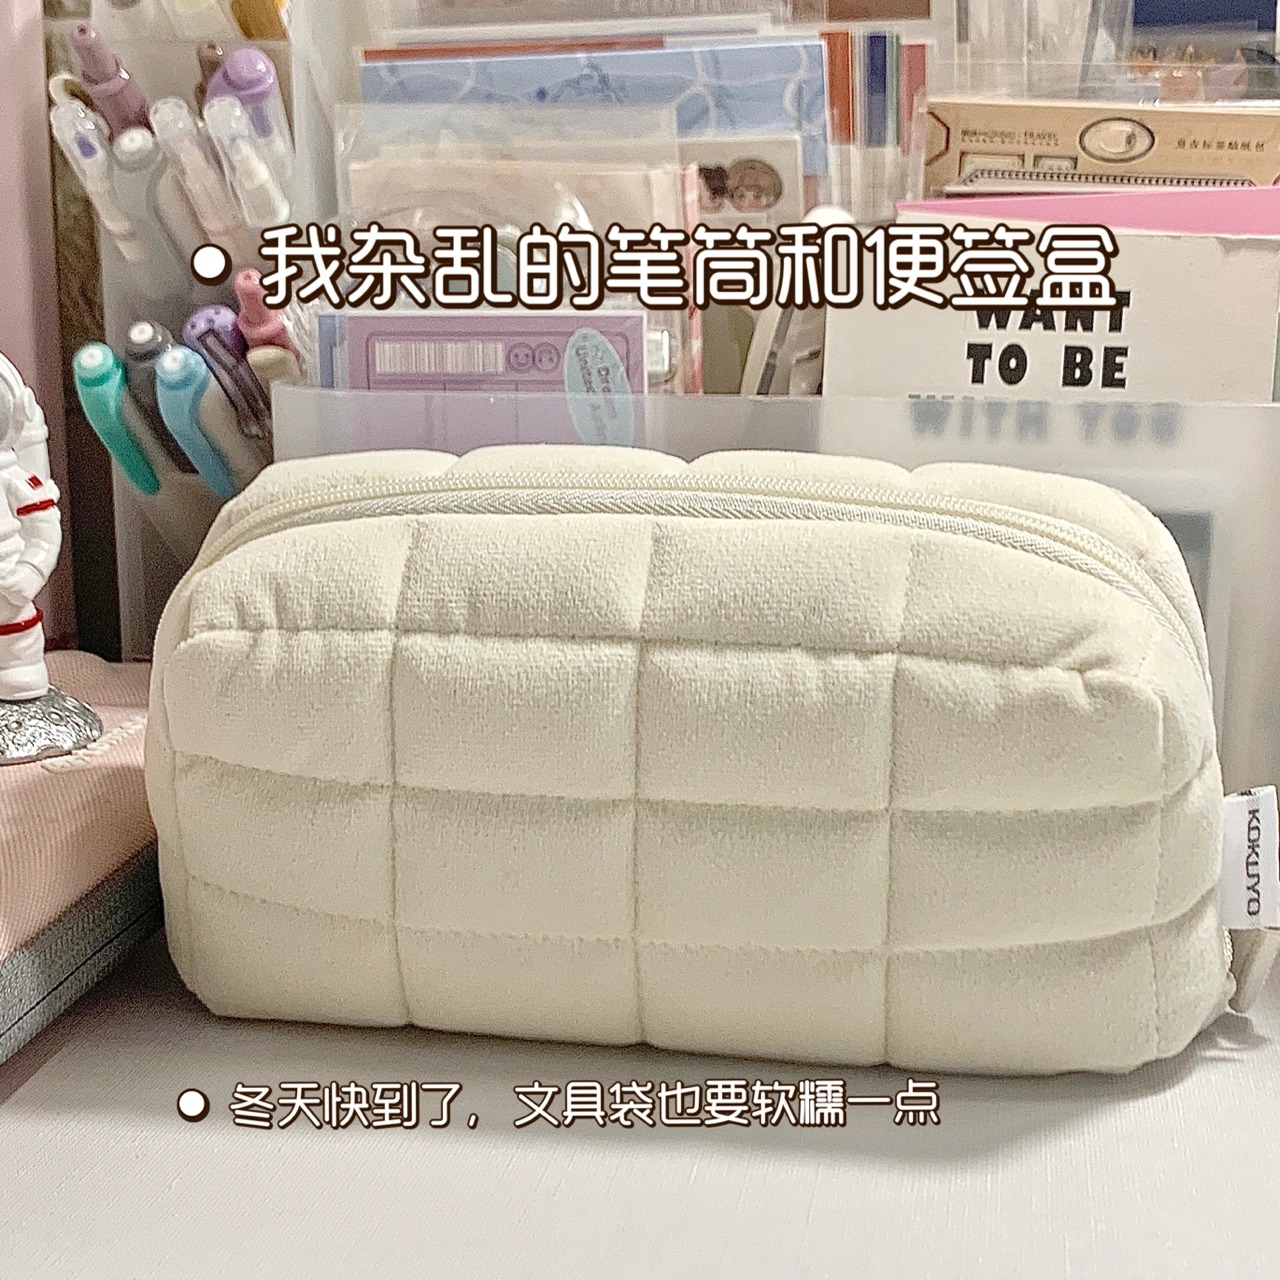 日本国誉笔袋NEMUNEMU枕枕包柔软枕头包文具收纳包可平摊化妆包